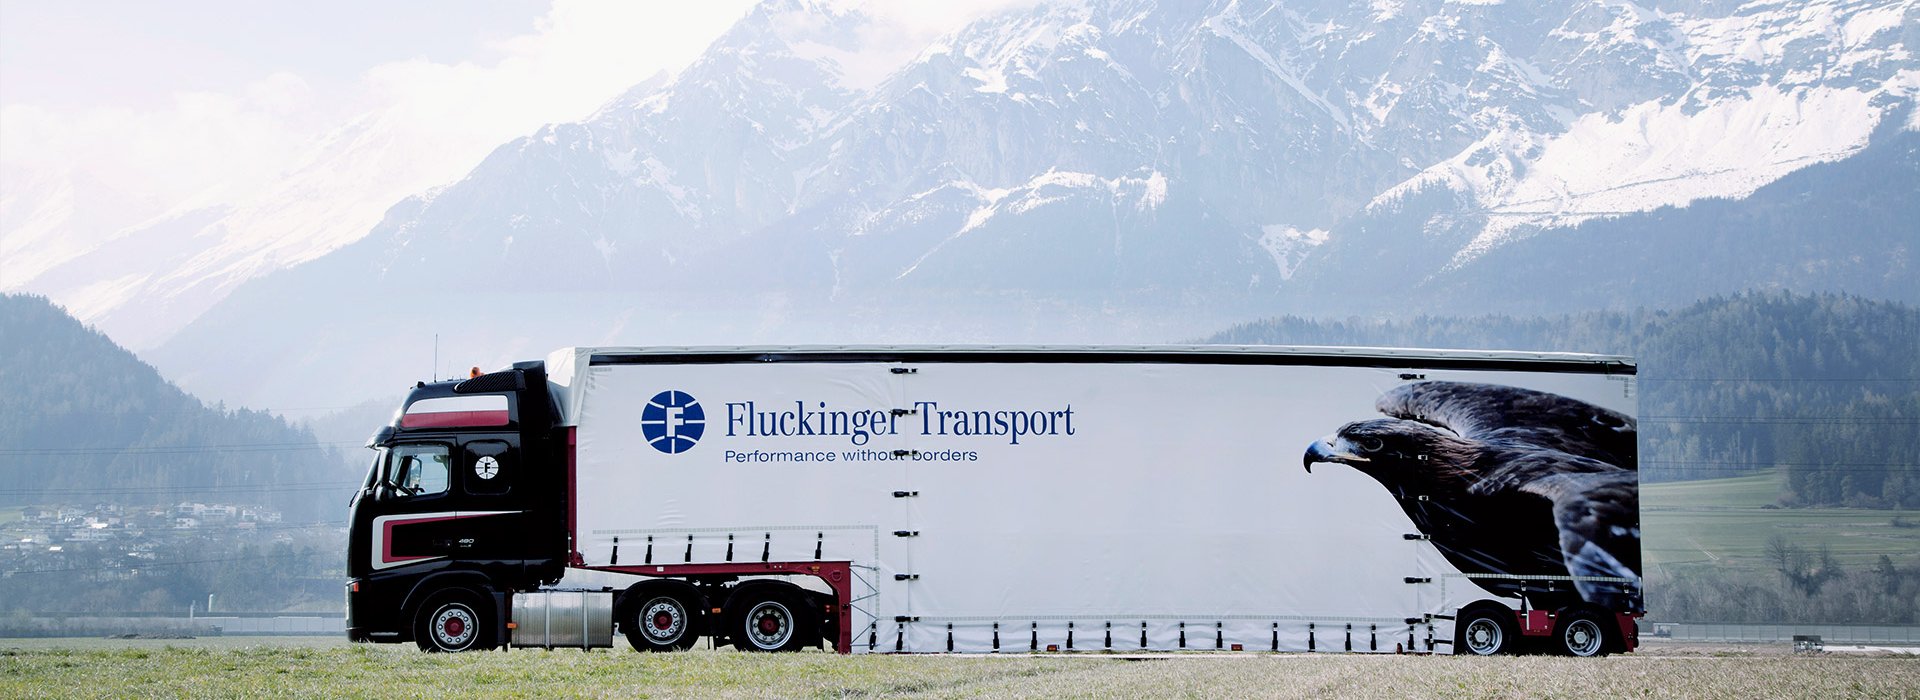 Fluckinger Transport truck in Tirol